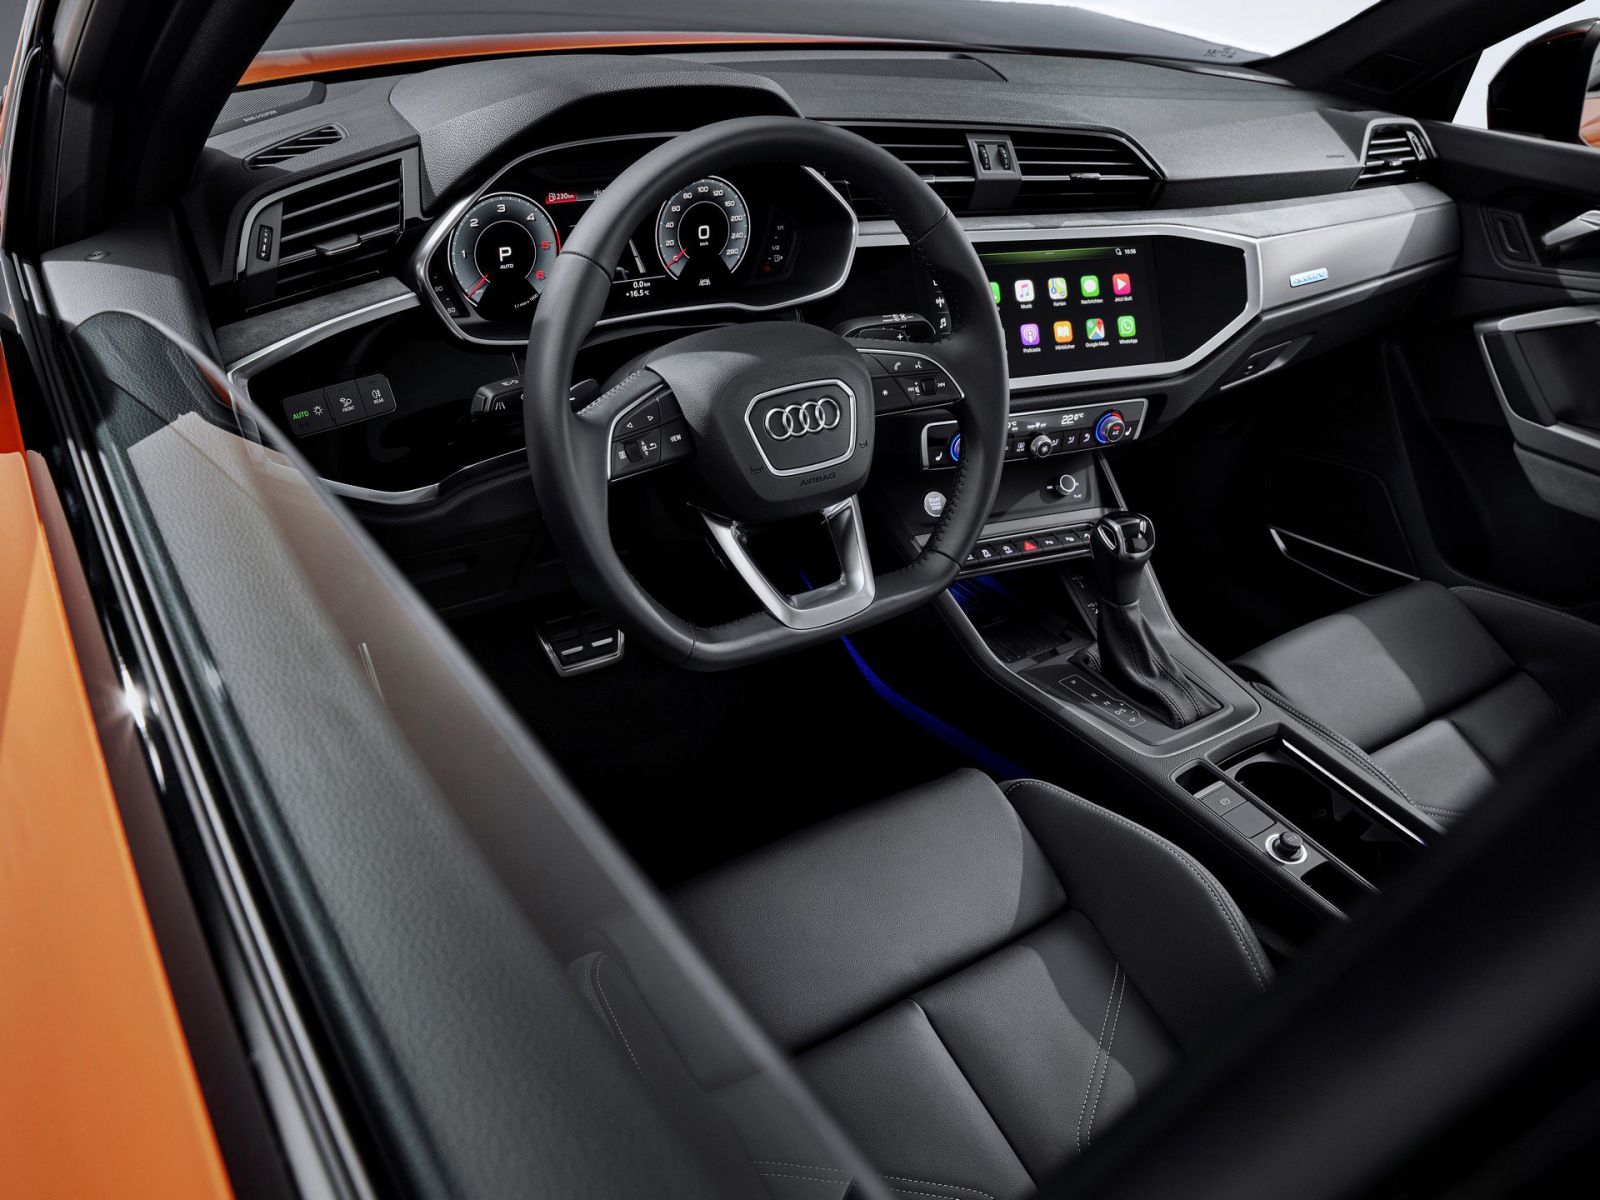 Audi Ra Mắt Mẫu Q3 Coupe Sportback Hoàn toàn mới Giá Rẻ dự kiến về việt nam vào năm 2020, mức giá khoảng 2 tỷ đồng sẽ cạnh tranh với glc, bmw x3, lexus nx, 